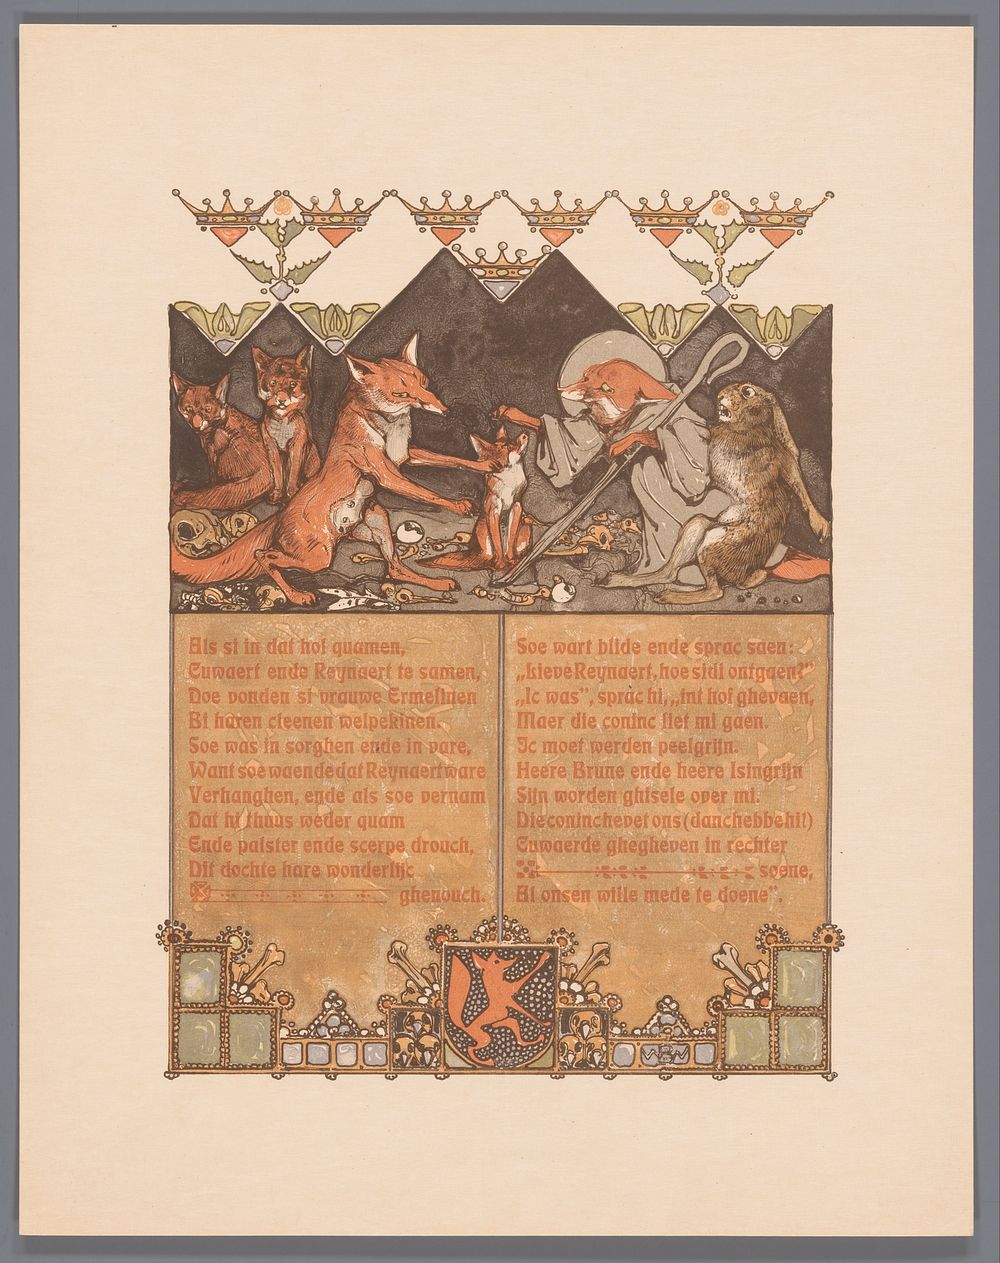 Vos in monnikspij (Reinaert) met haas (Cuwaert) bij vossin (Hermeline) en welpen in vossenhol (1910) by Bernard Willem…